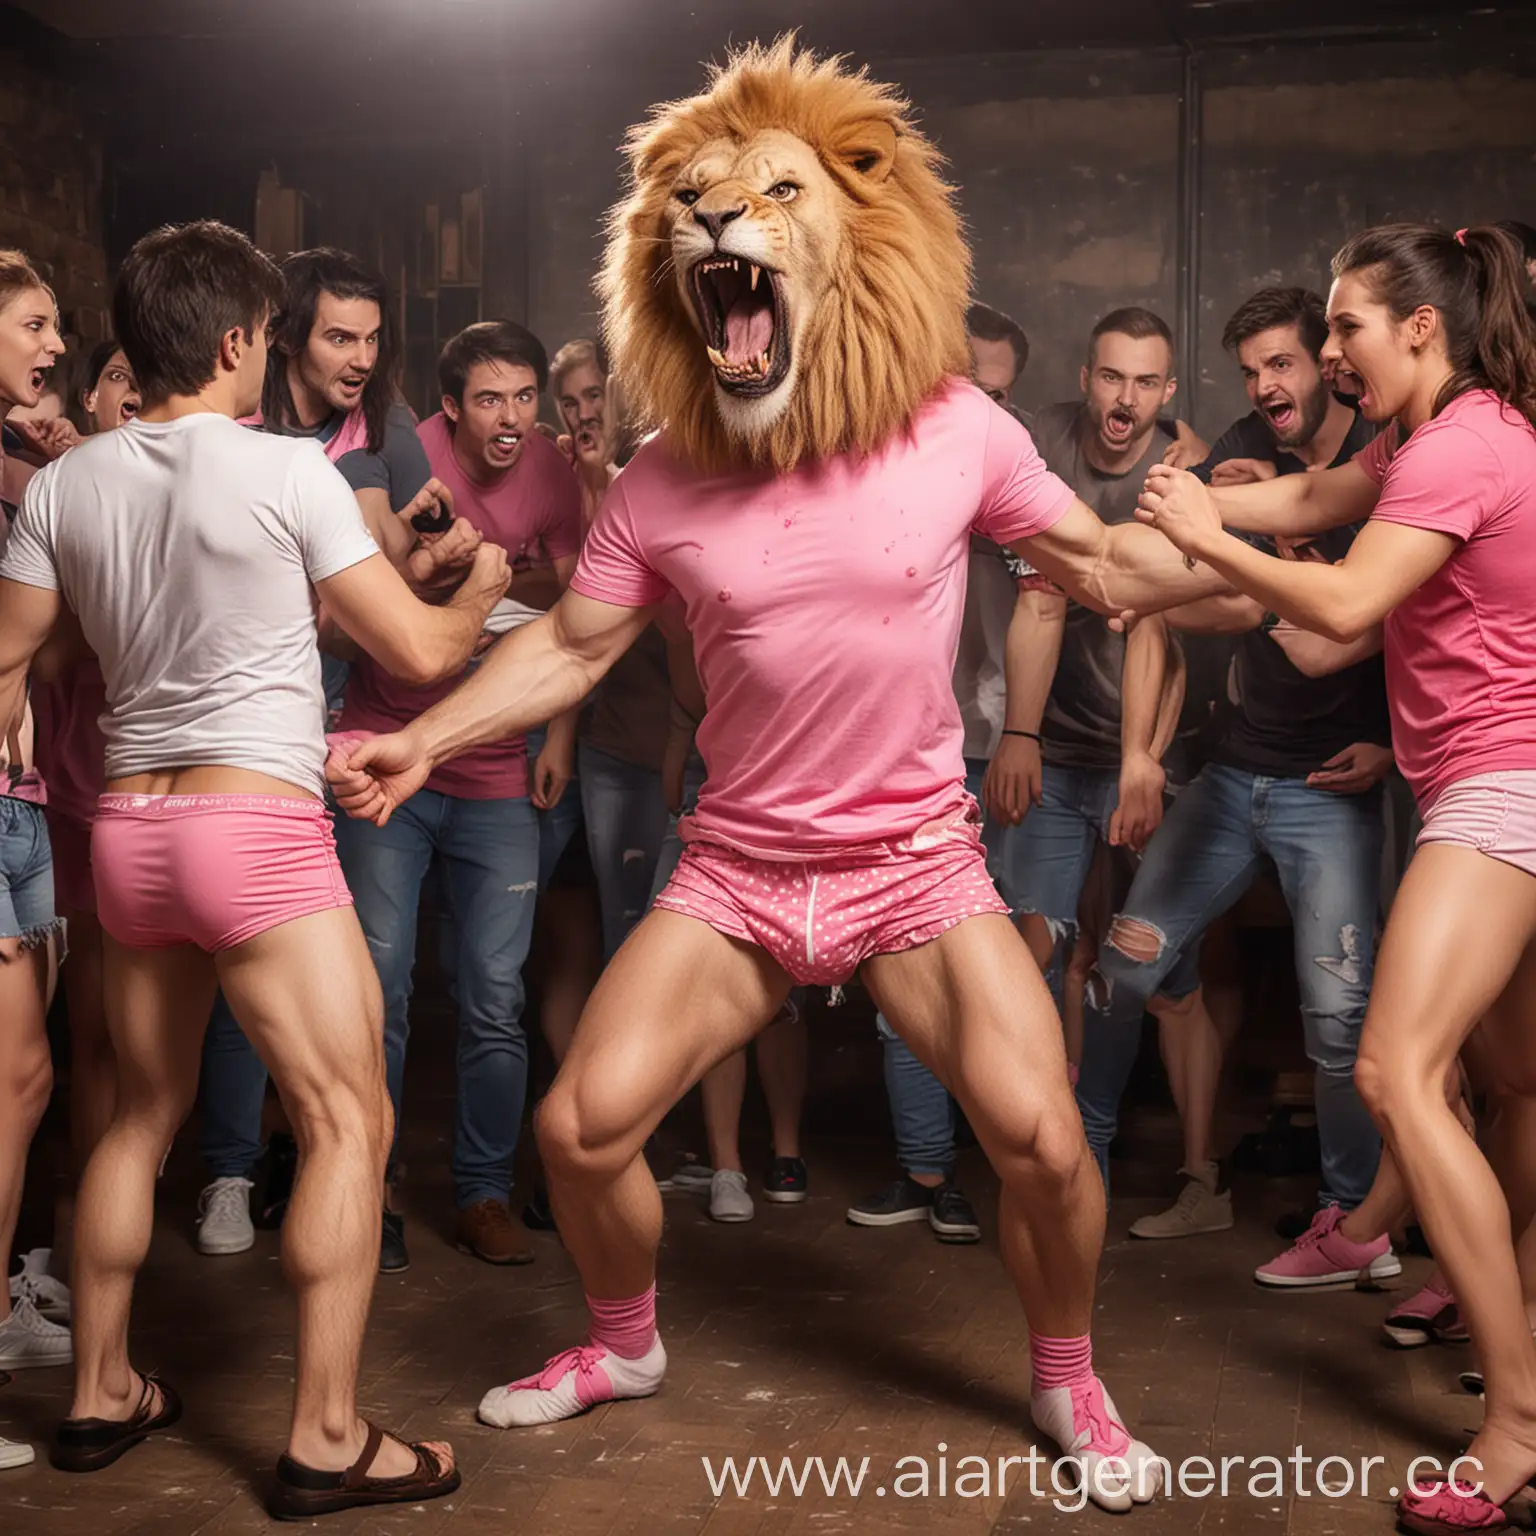 злой человек-лев одетый в кепку розовые трусы и майку устраивает драку в клубе